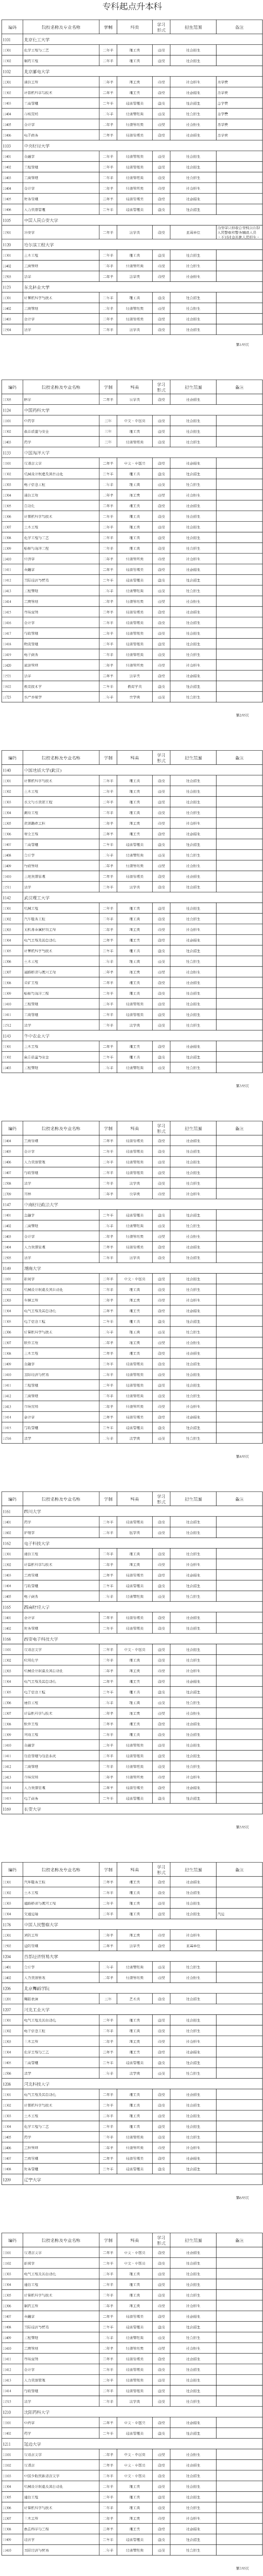 海南省2020年成人高考招生专业目录.png